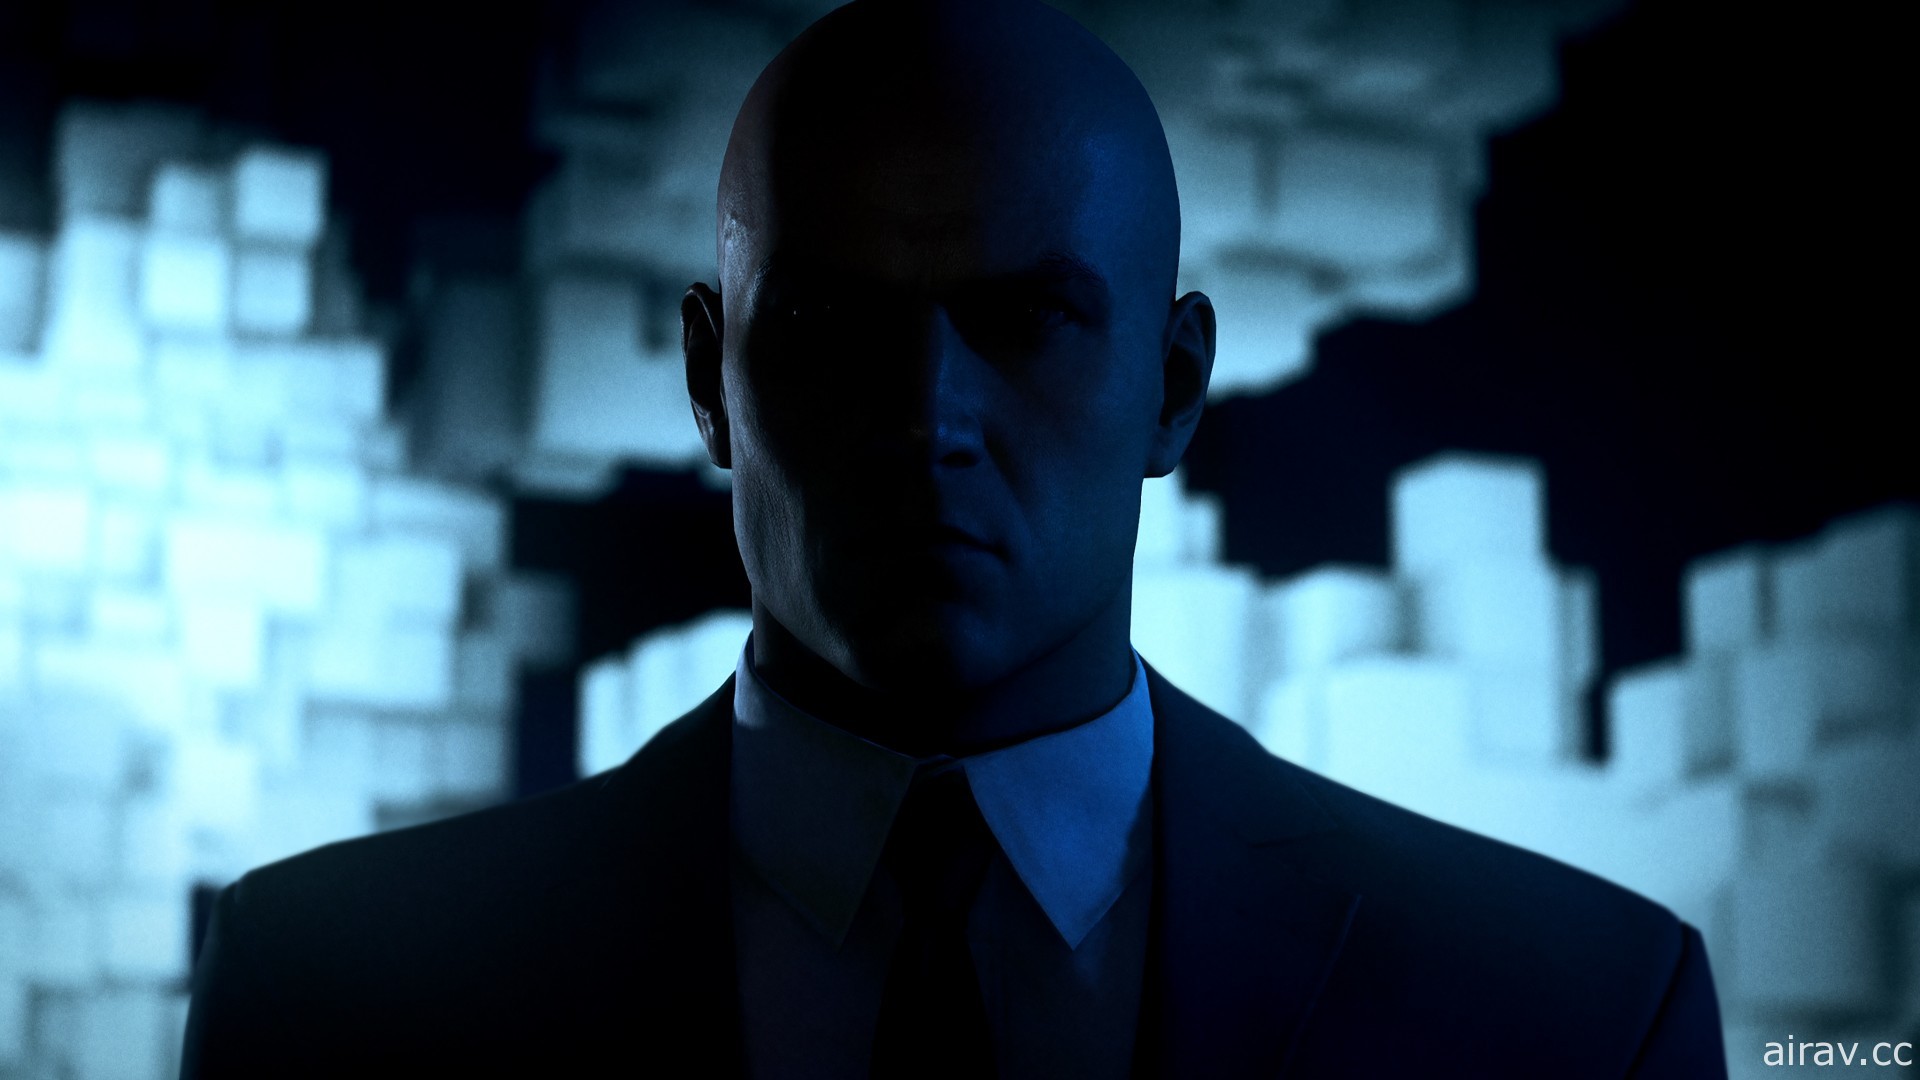 《刺客任务 3》释出 PS VR 宣传影片 透过虚拟实境体验完全沉浸的杀手生涯